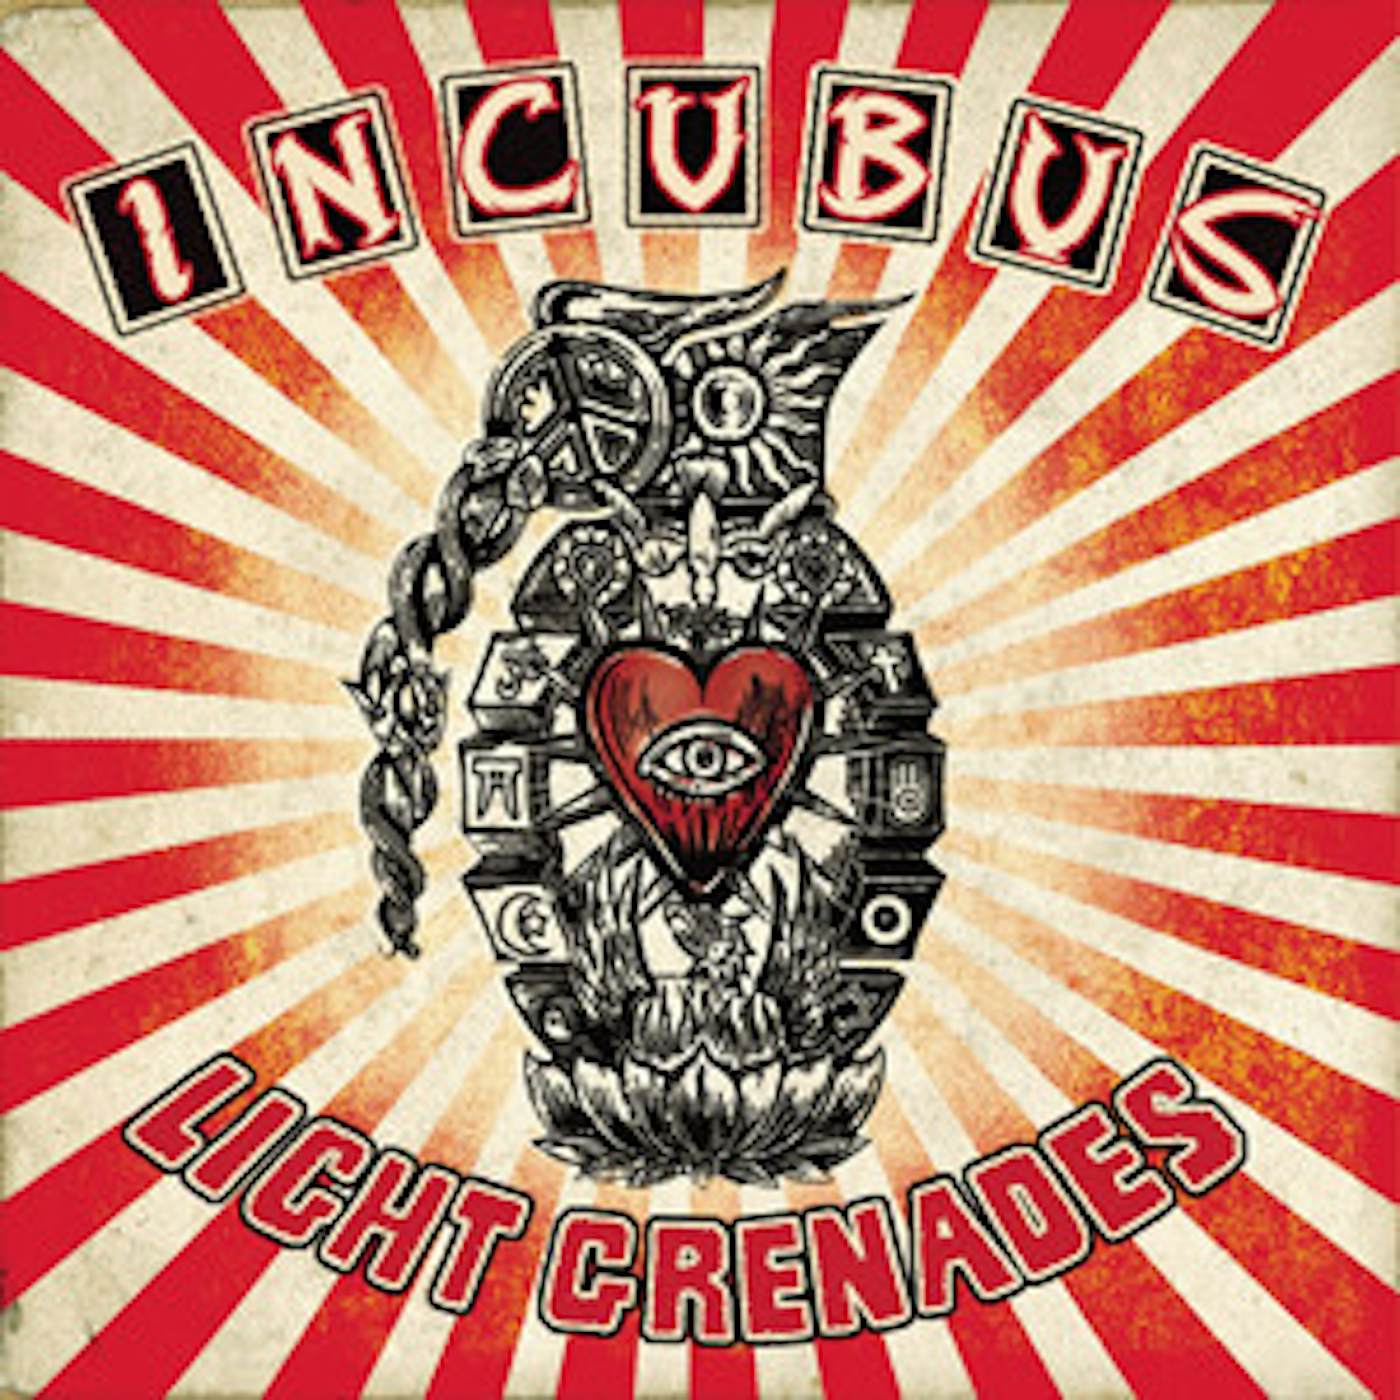 Incubus Light Grenades Vinyl Record